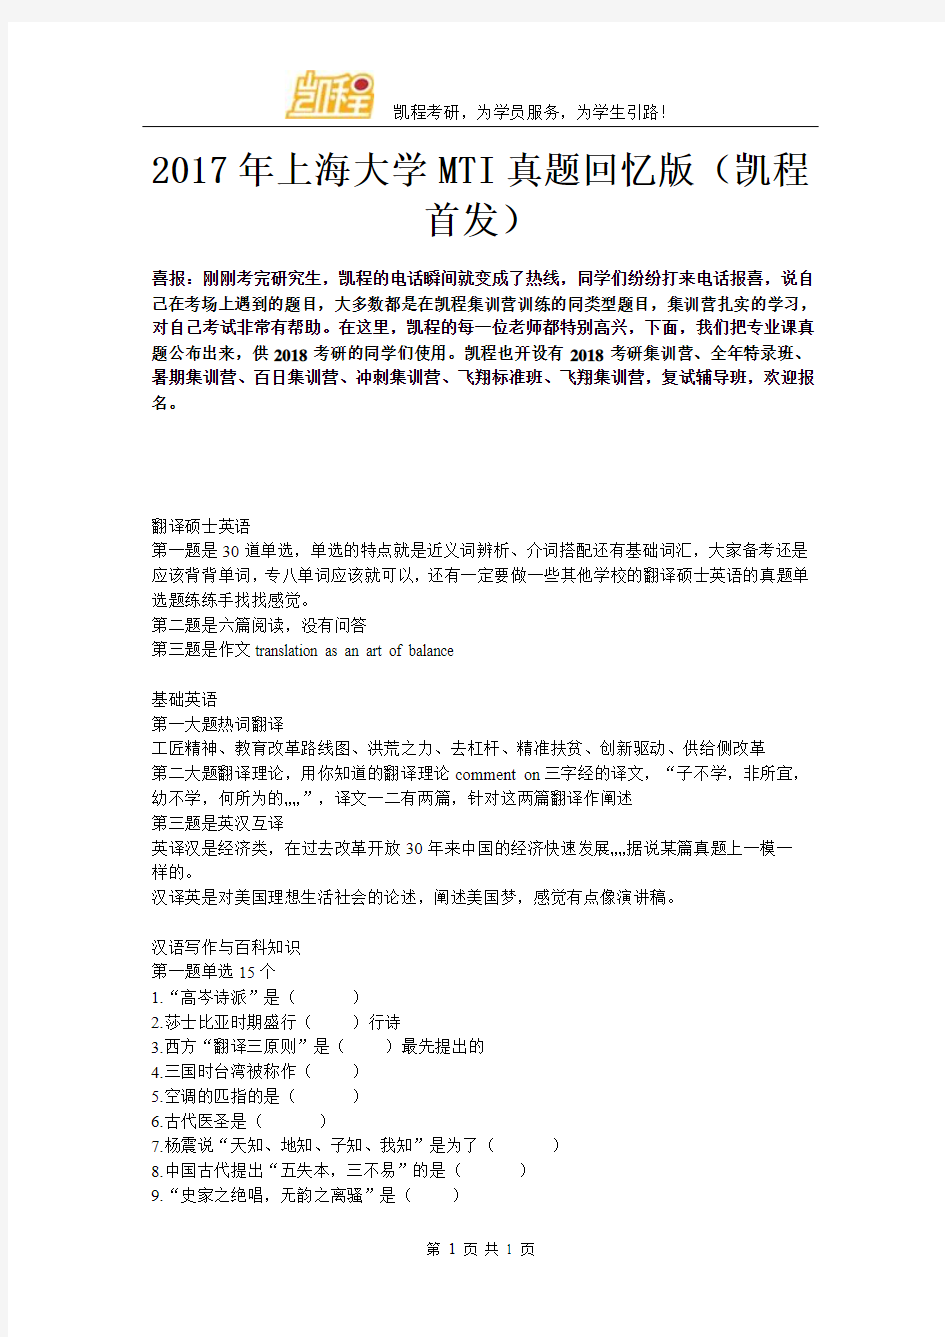 2017年上海大学MTI真题回忆版(凯程首发)